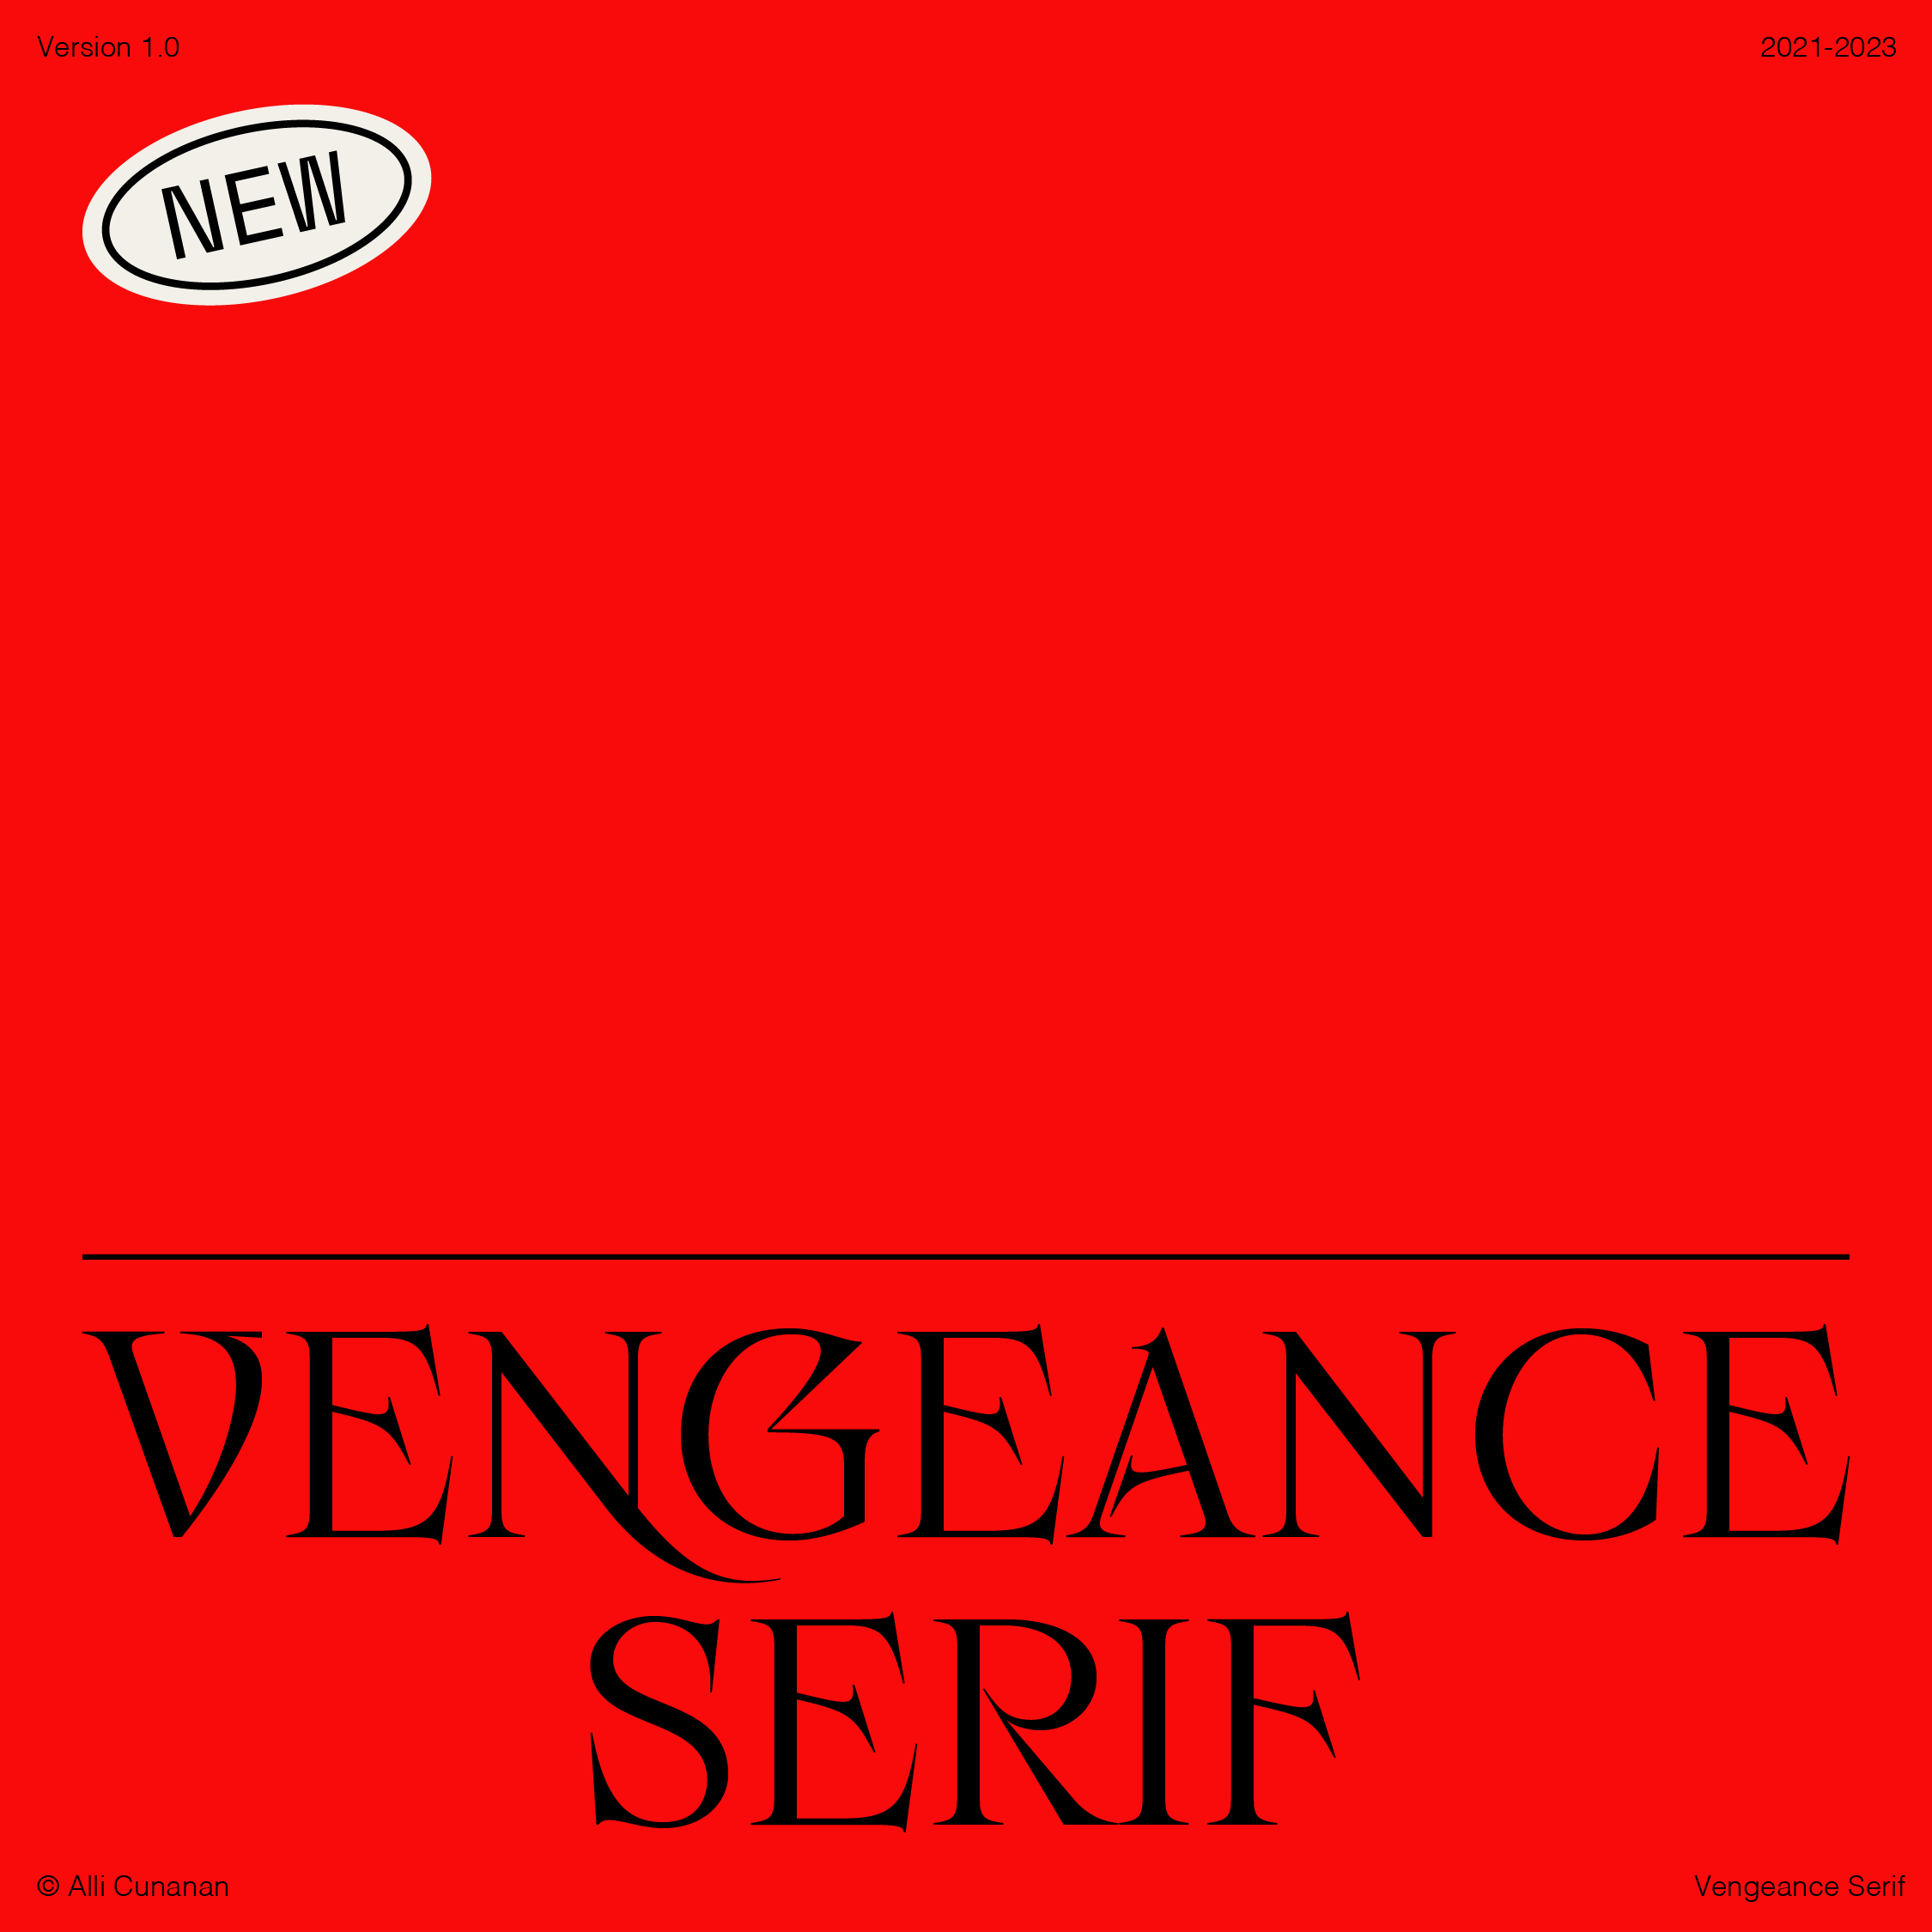 Beispiel einer Vengeance Serif-Schriftart